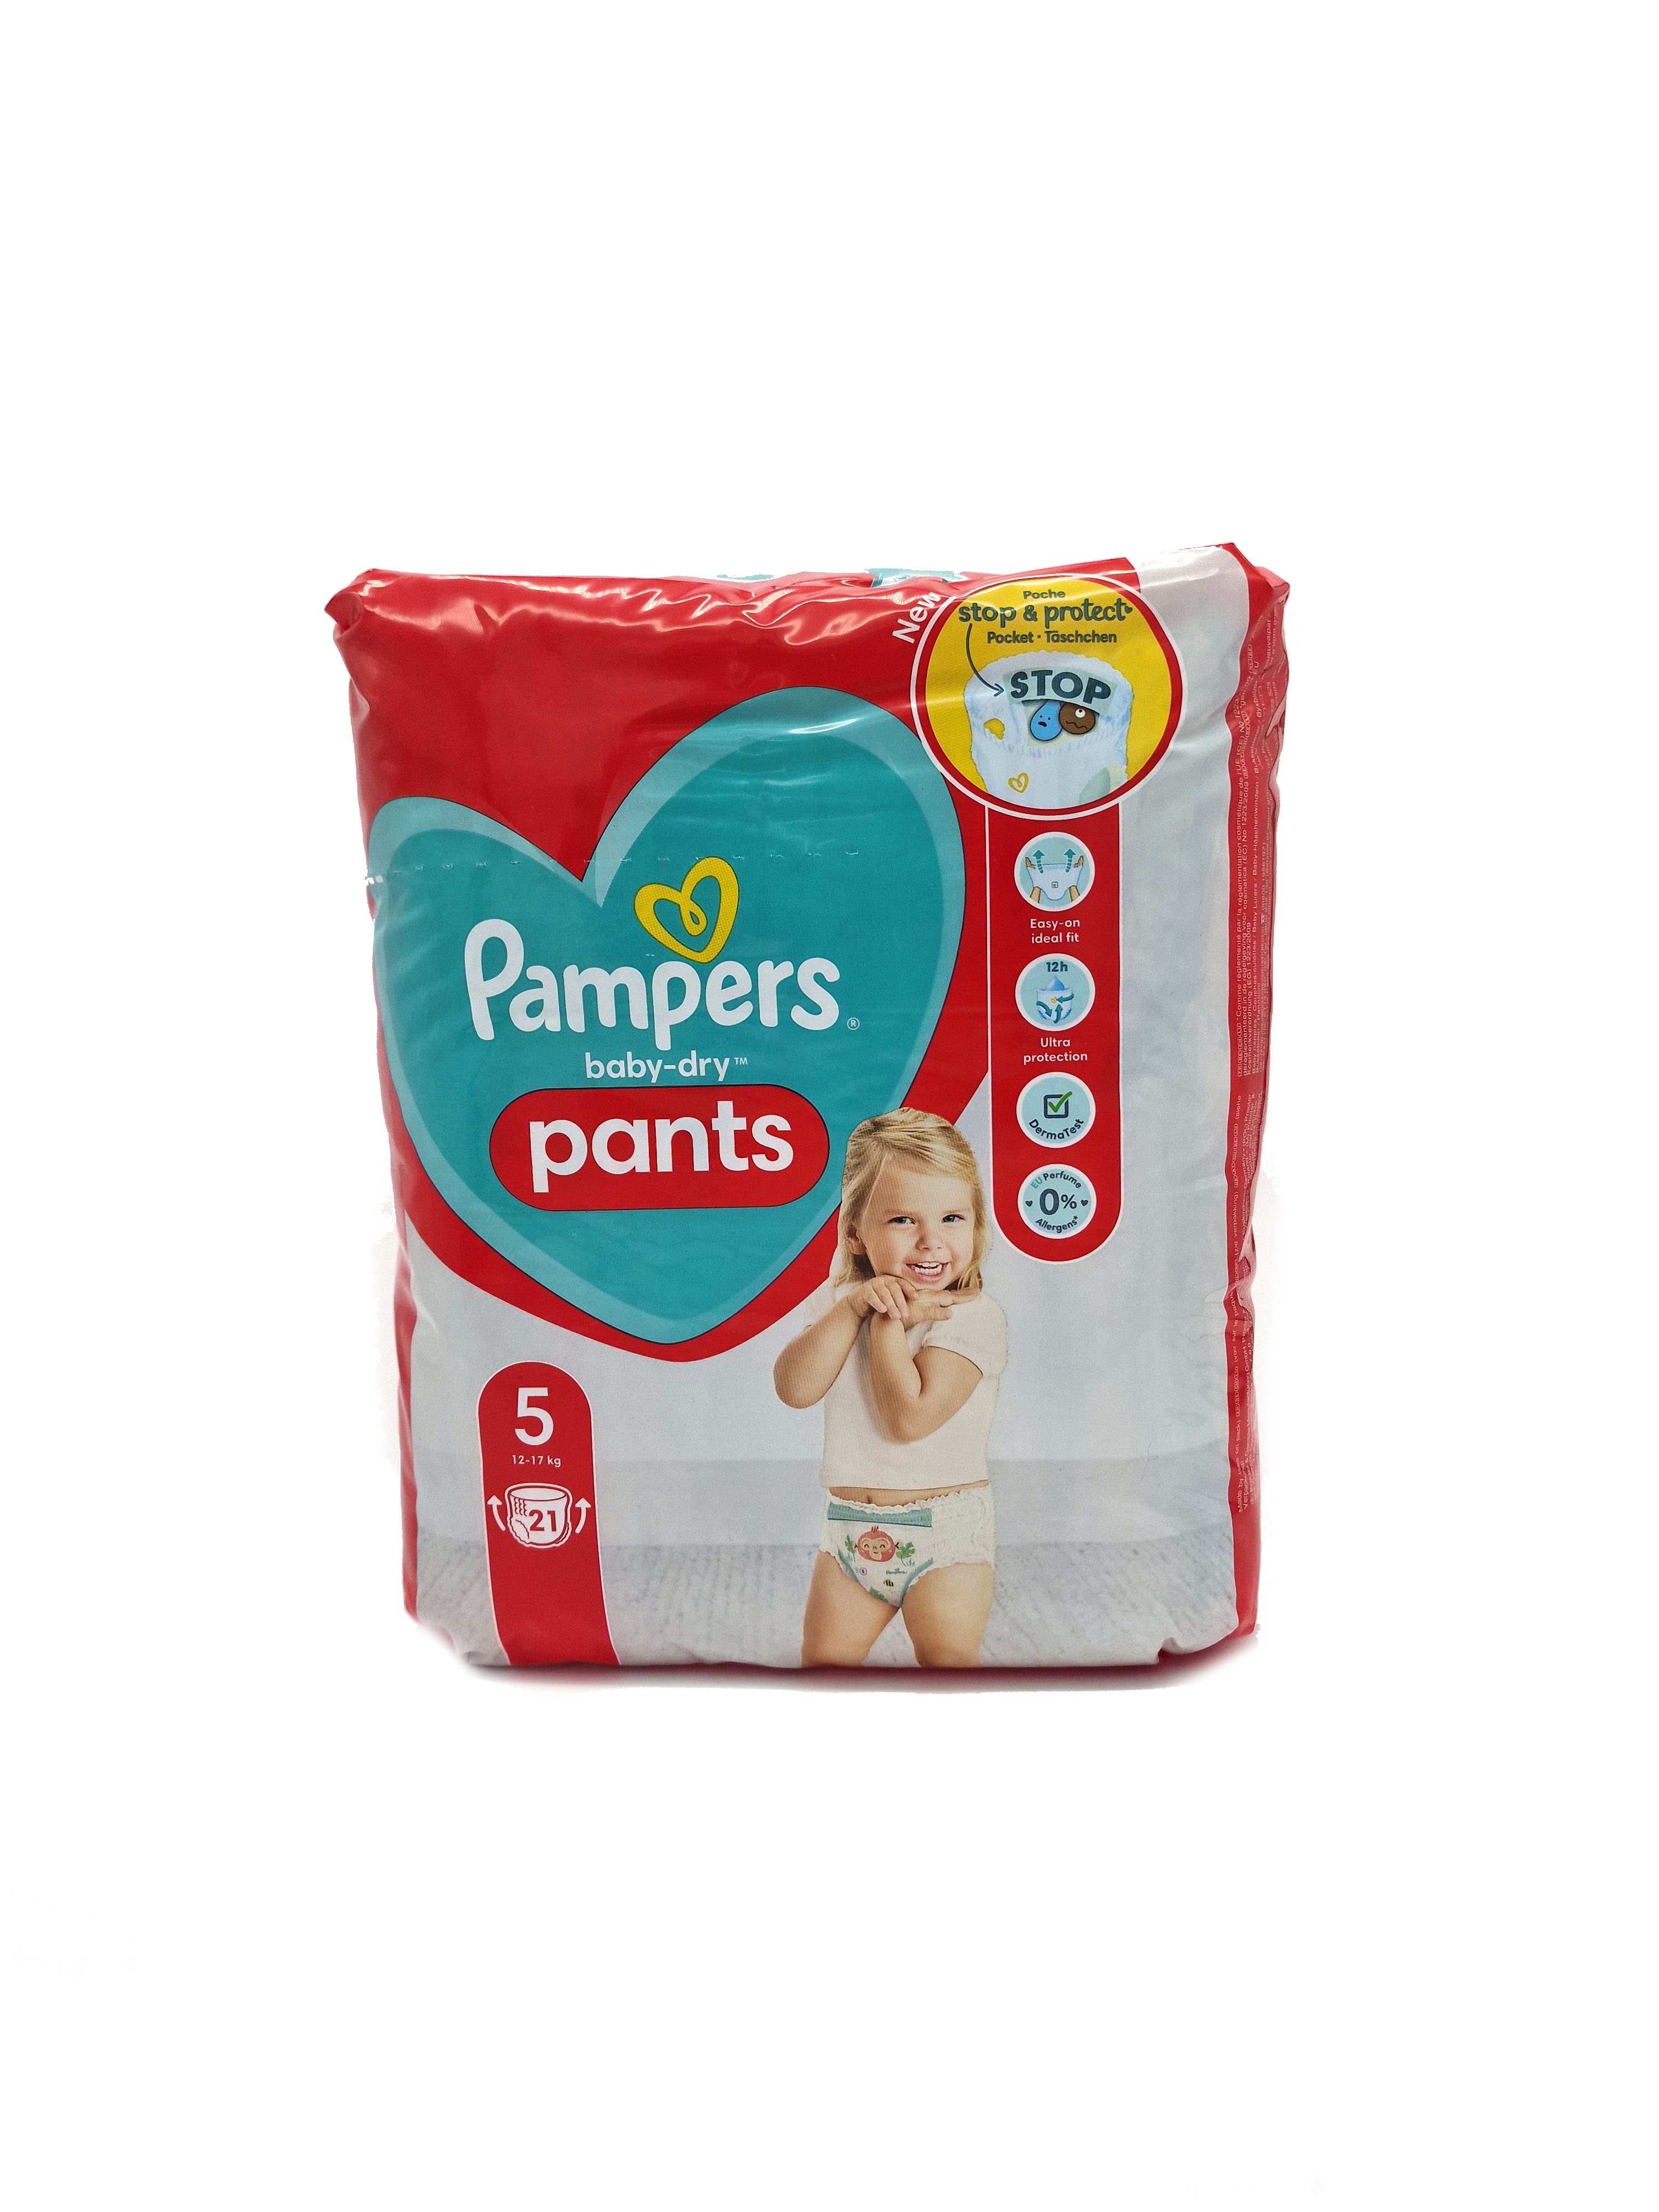 Pampers Pants Baby Dry Windelhosen 21Stück Größe 5 (12-17kg)